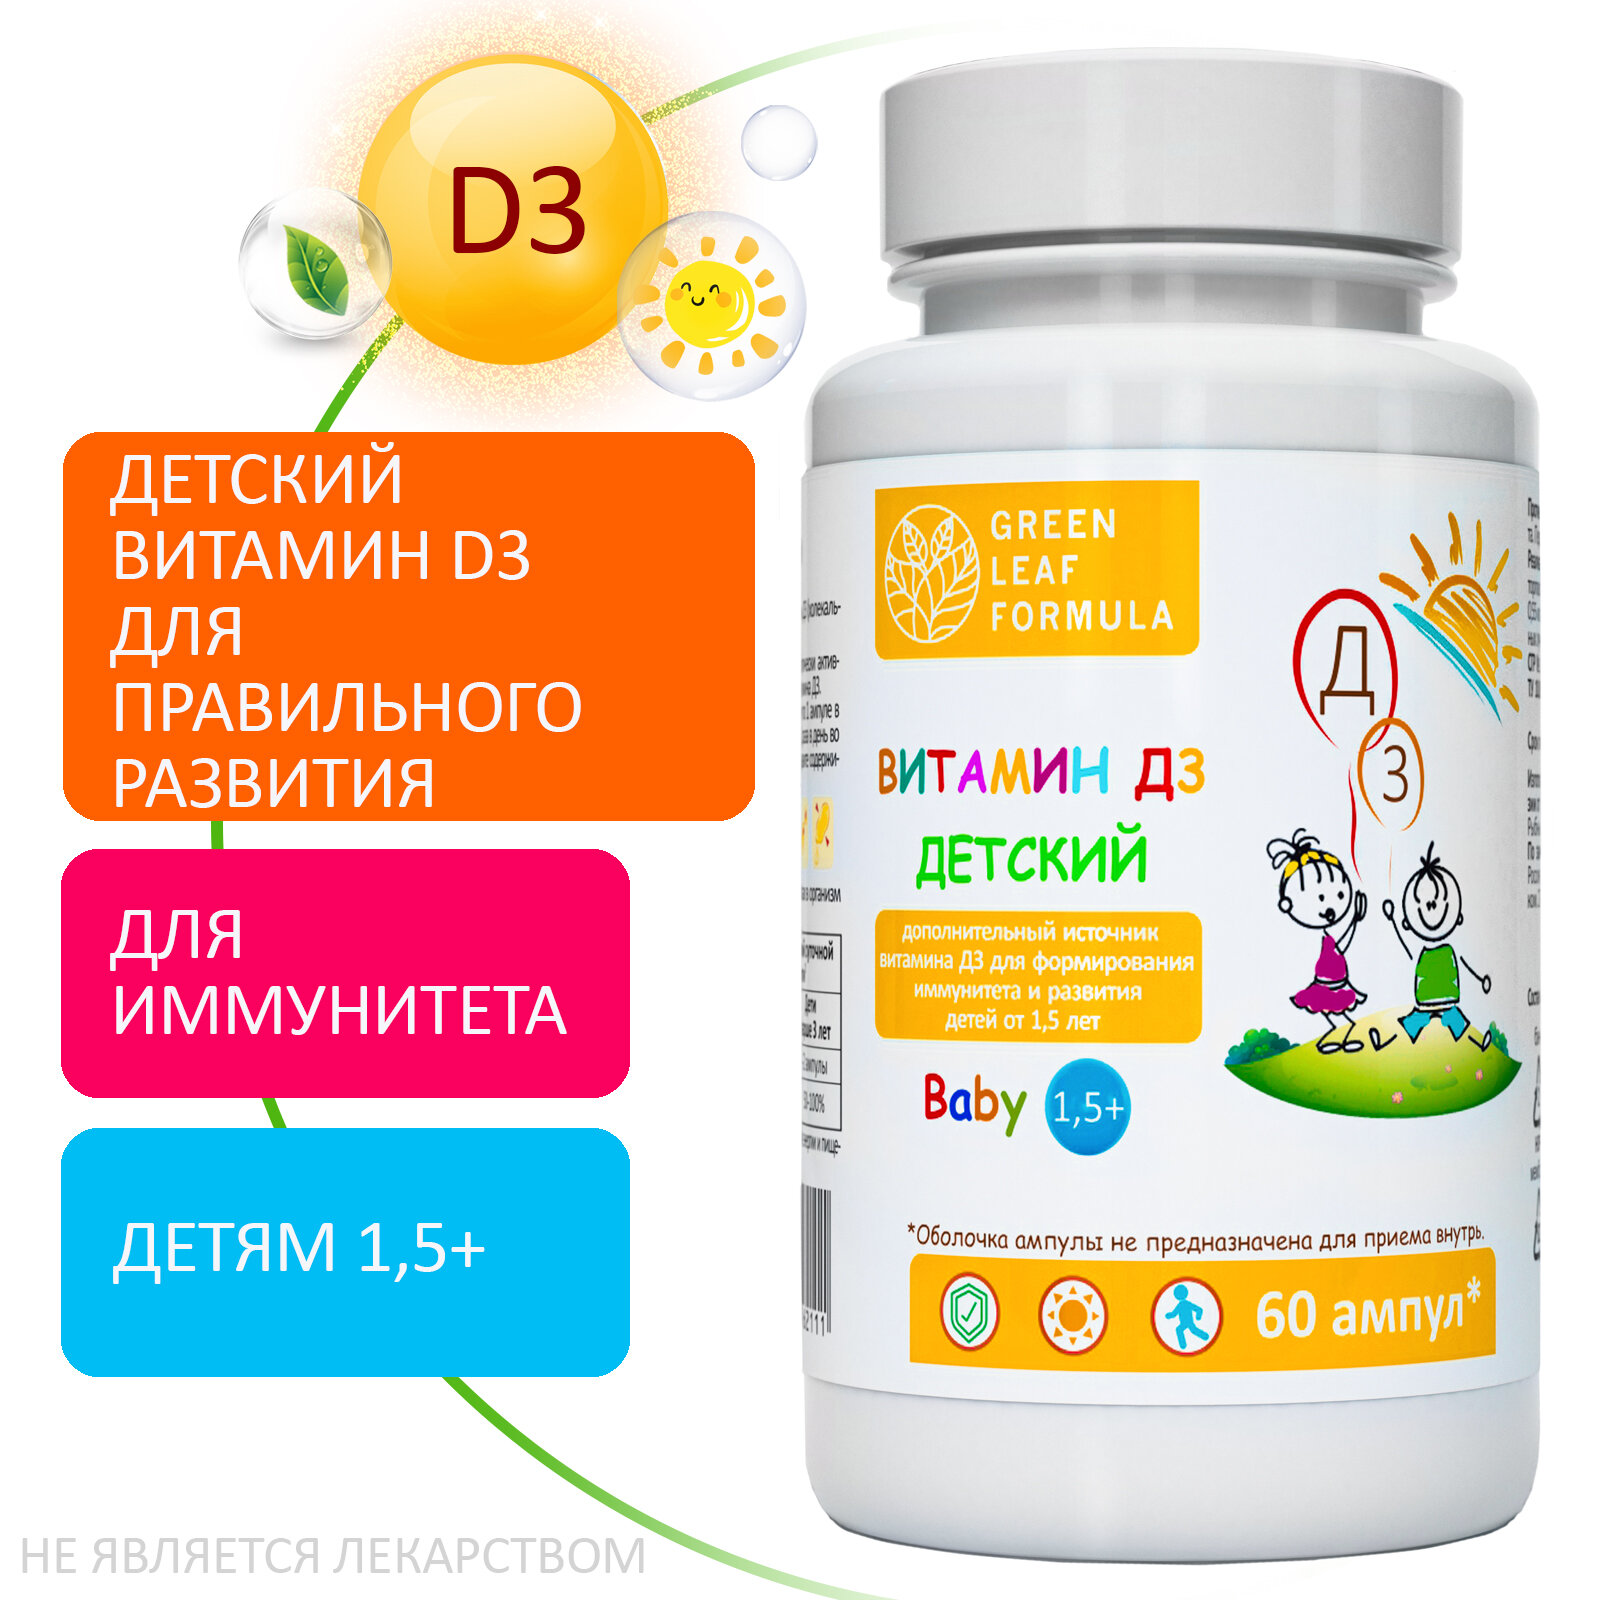 Витамин D3 для детей от 1,5 лет, детские витамины для костей и суставов, для иммунитета